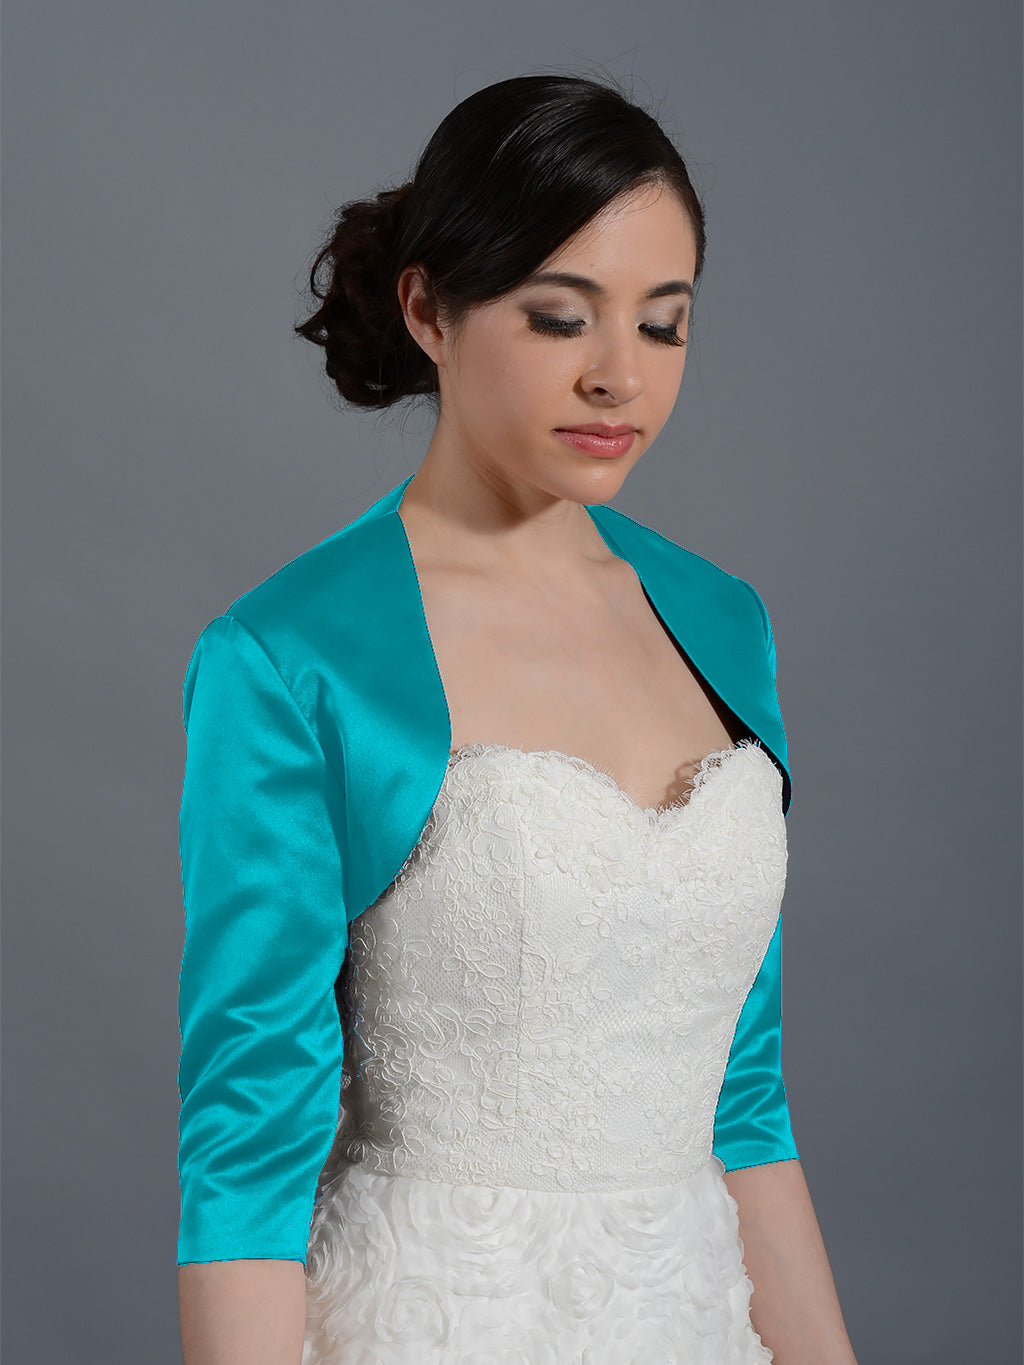 Teal 3/4 sleeve wedding satin bolero jacket